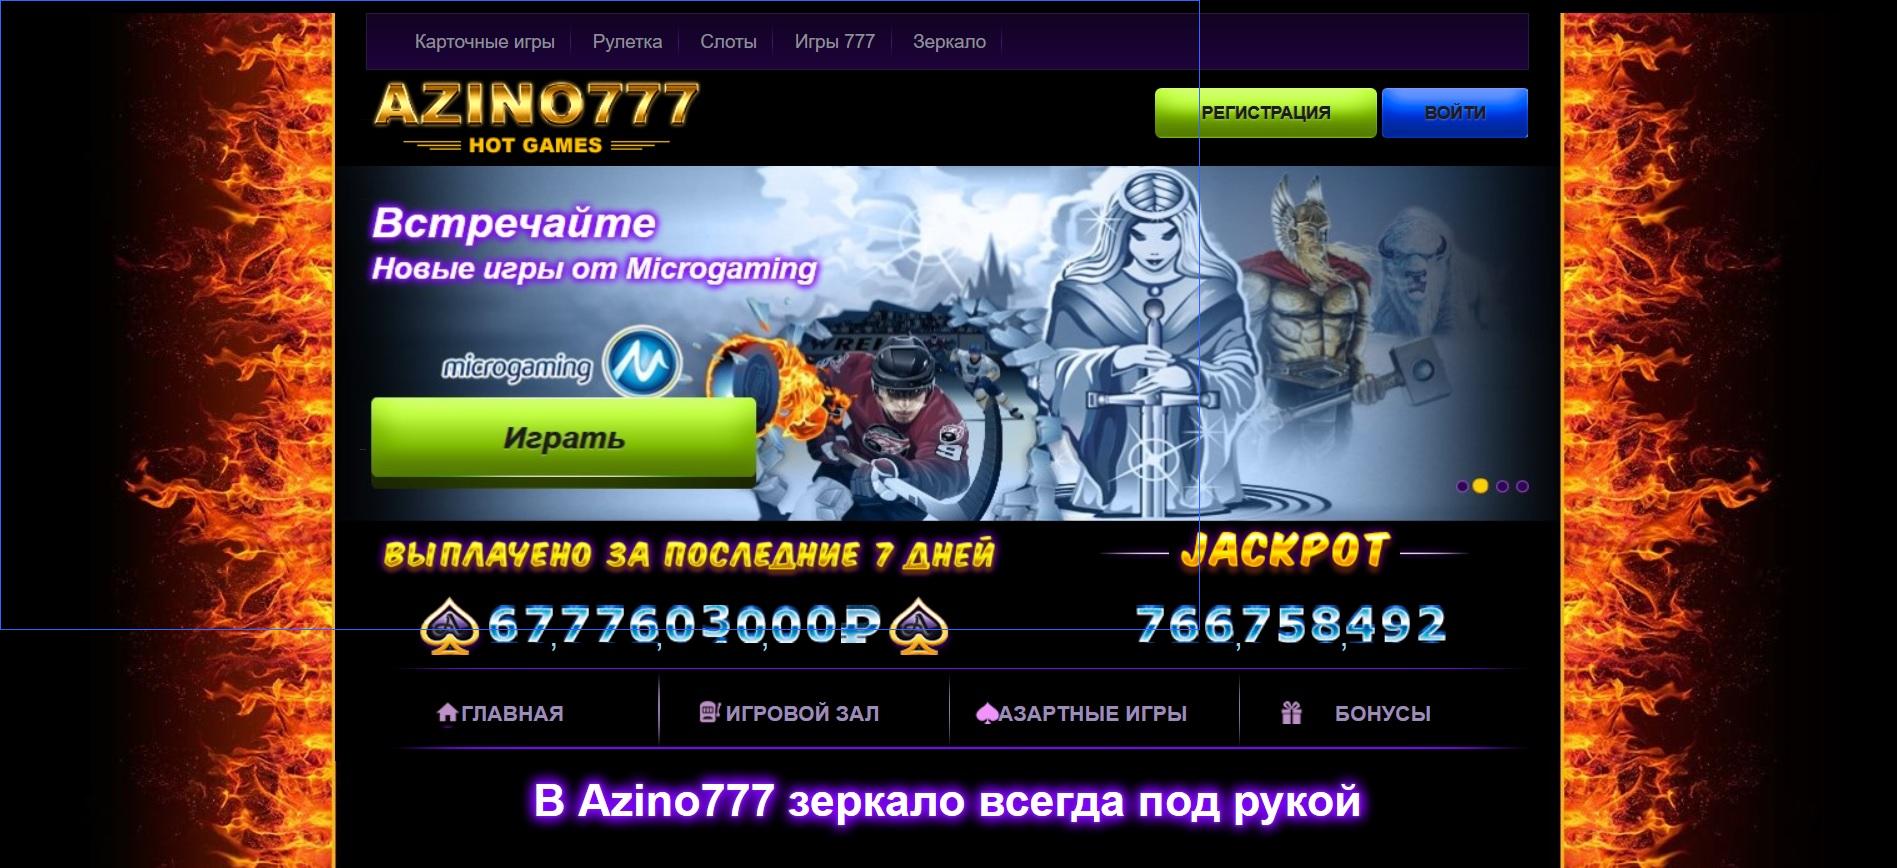 Скачать азино 777 казино на андроид casino бонус за регистрацию casinovs1 online